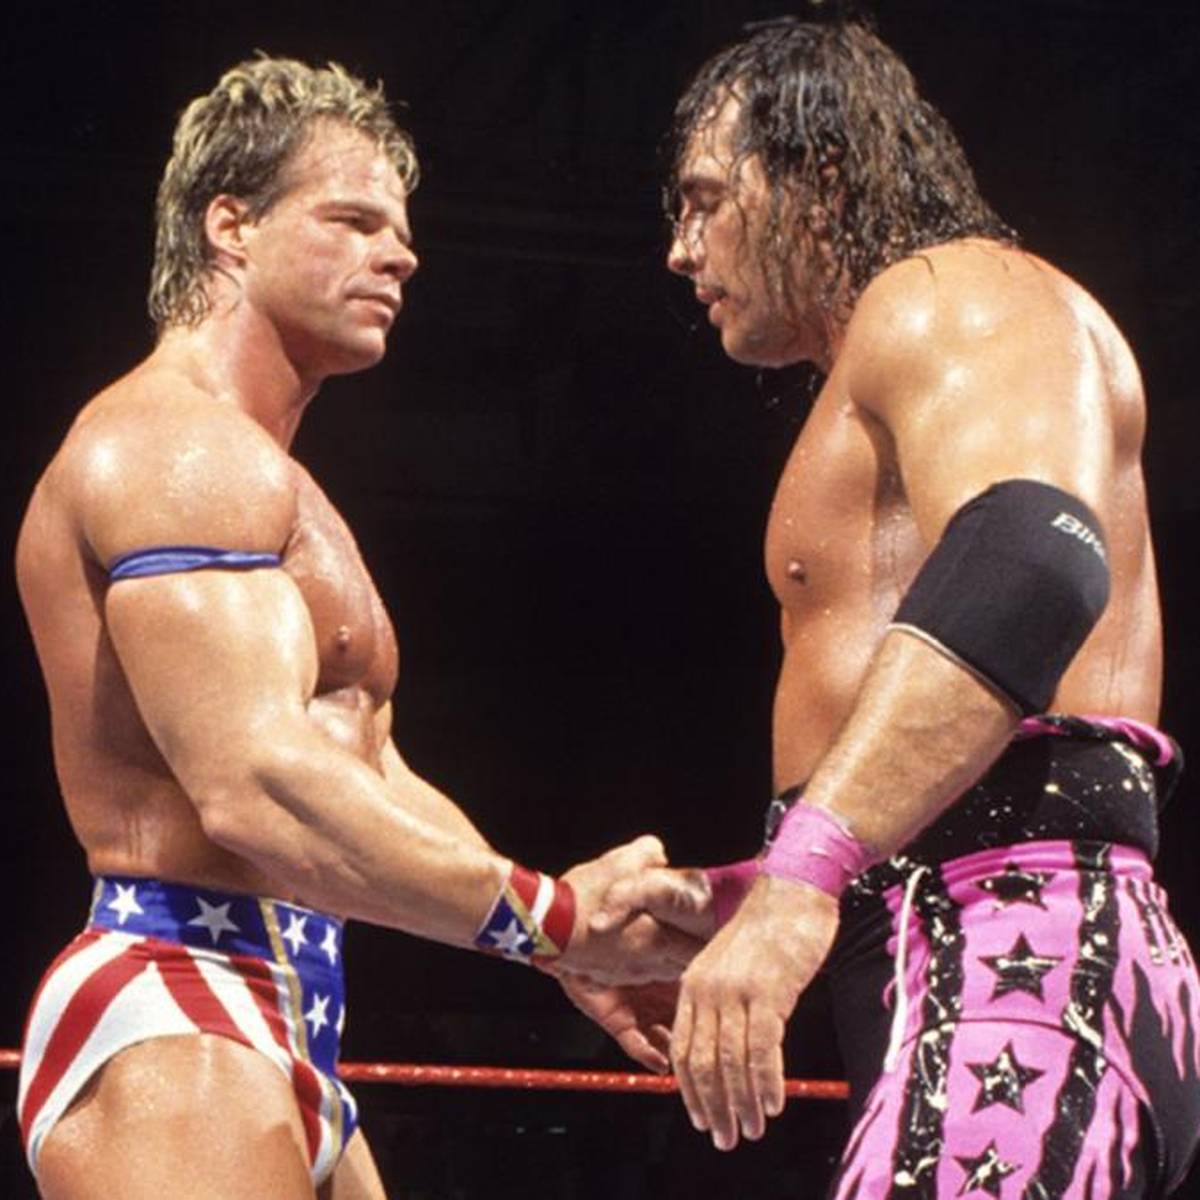 Shawn Michaels, Steve Austin, The Rock, Batista: Das Royal Rumble Match bei WWE beflügelte die Karrieren vieler Sieger. SPORT1 zeigt, was aus ihnen wurde.